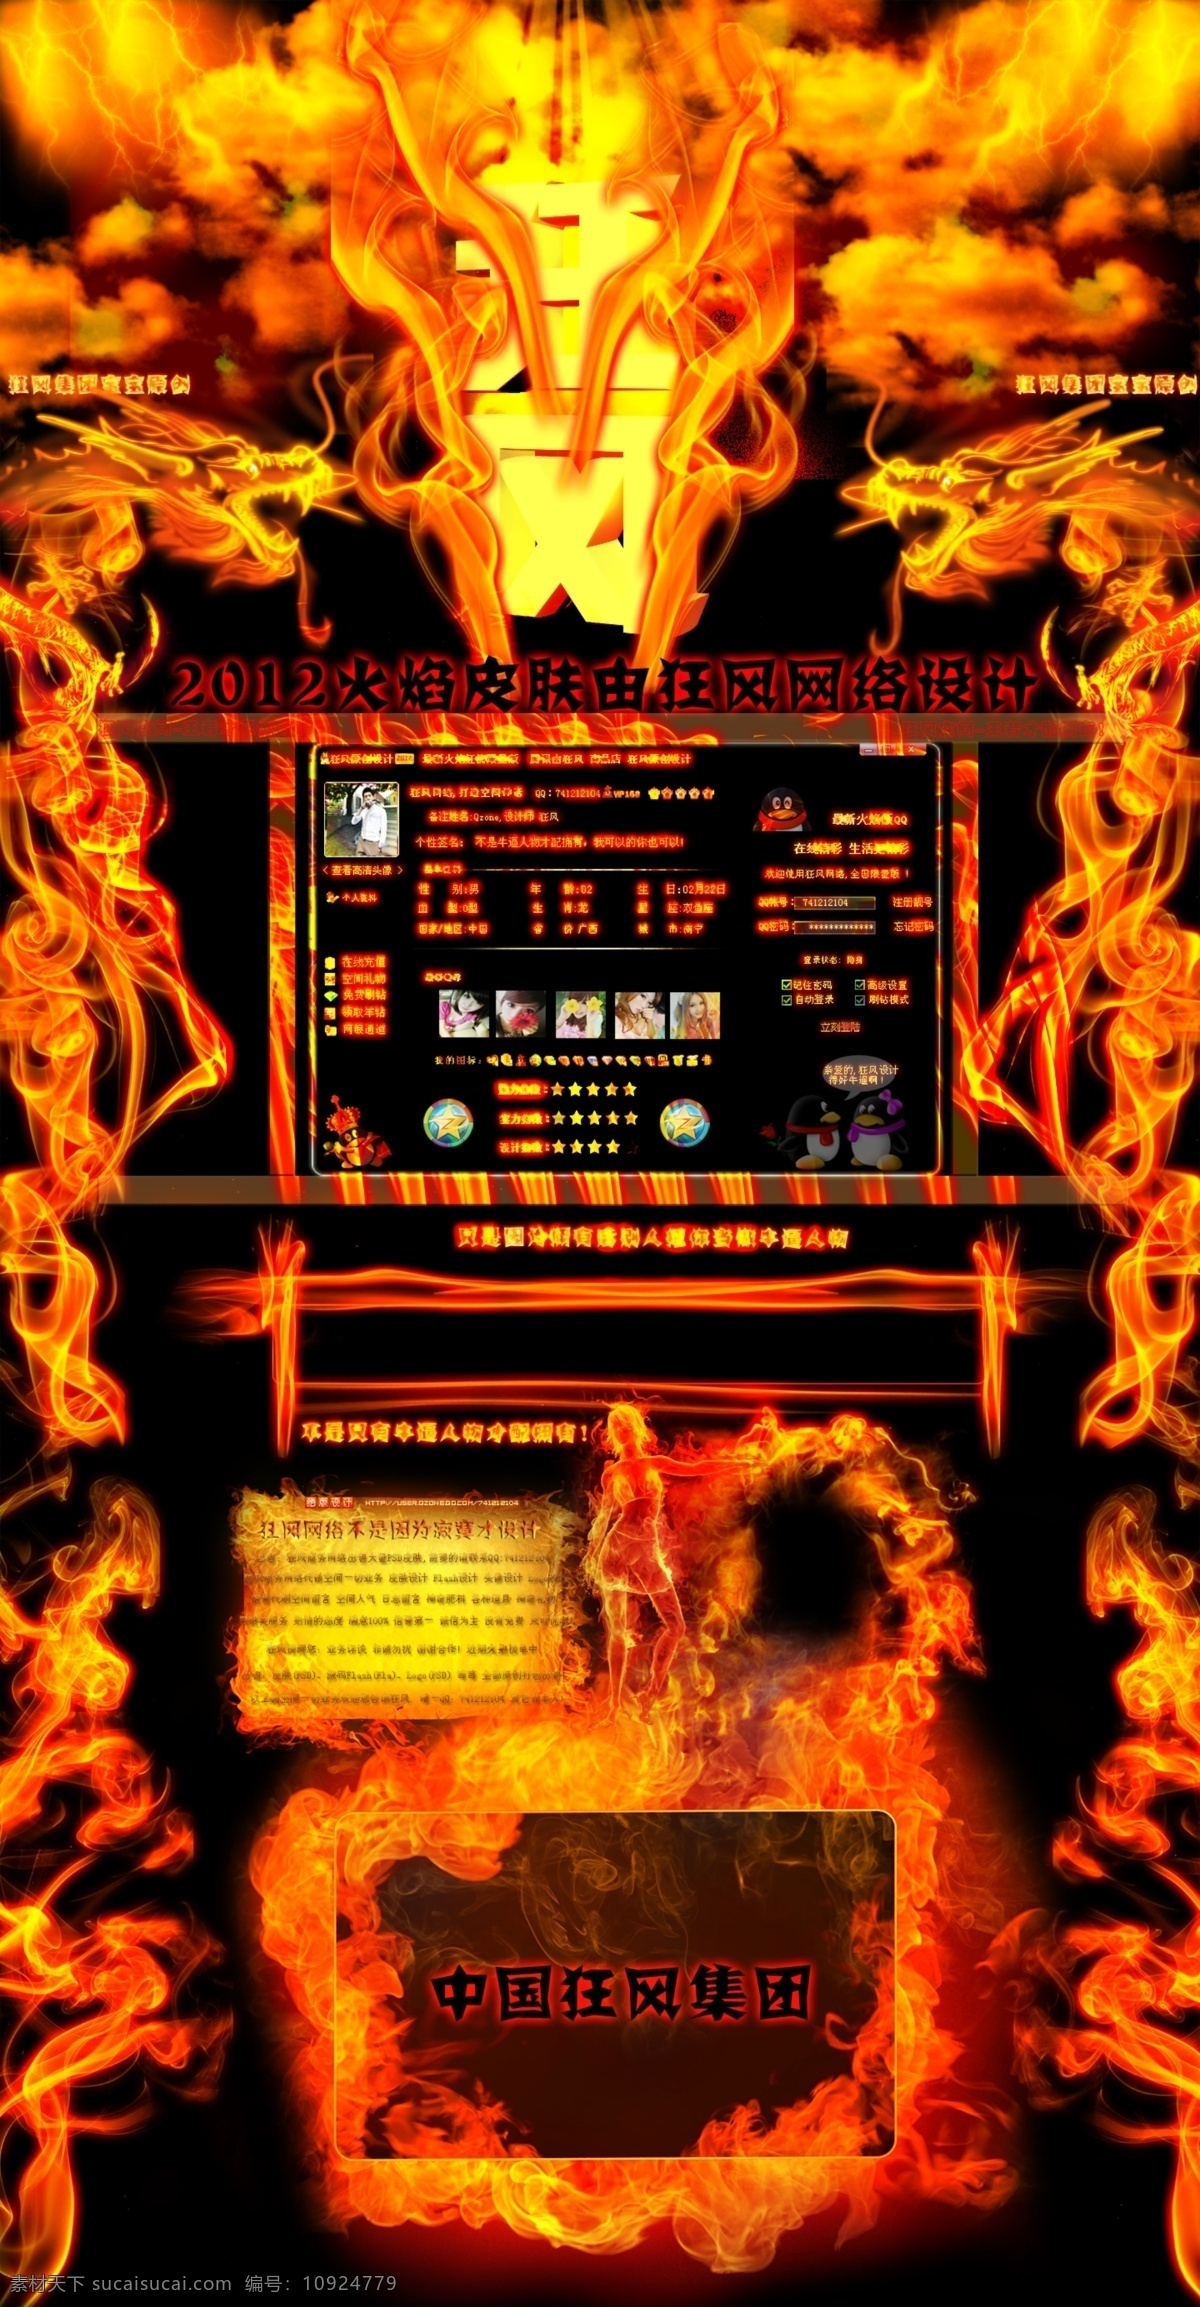 qq 空间 3d 火焰 龙 中国 网页素材 网页模板